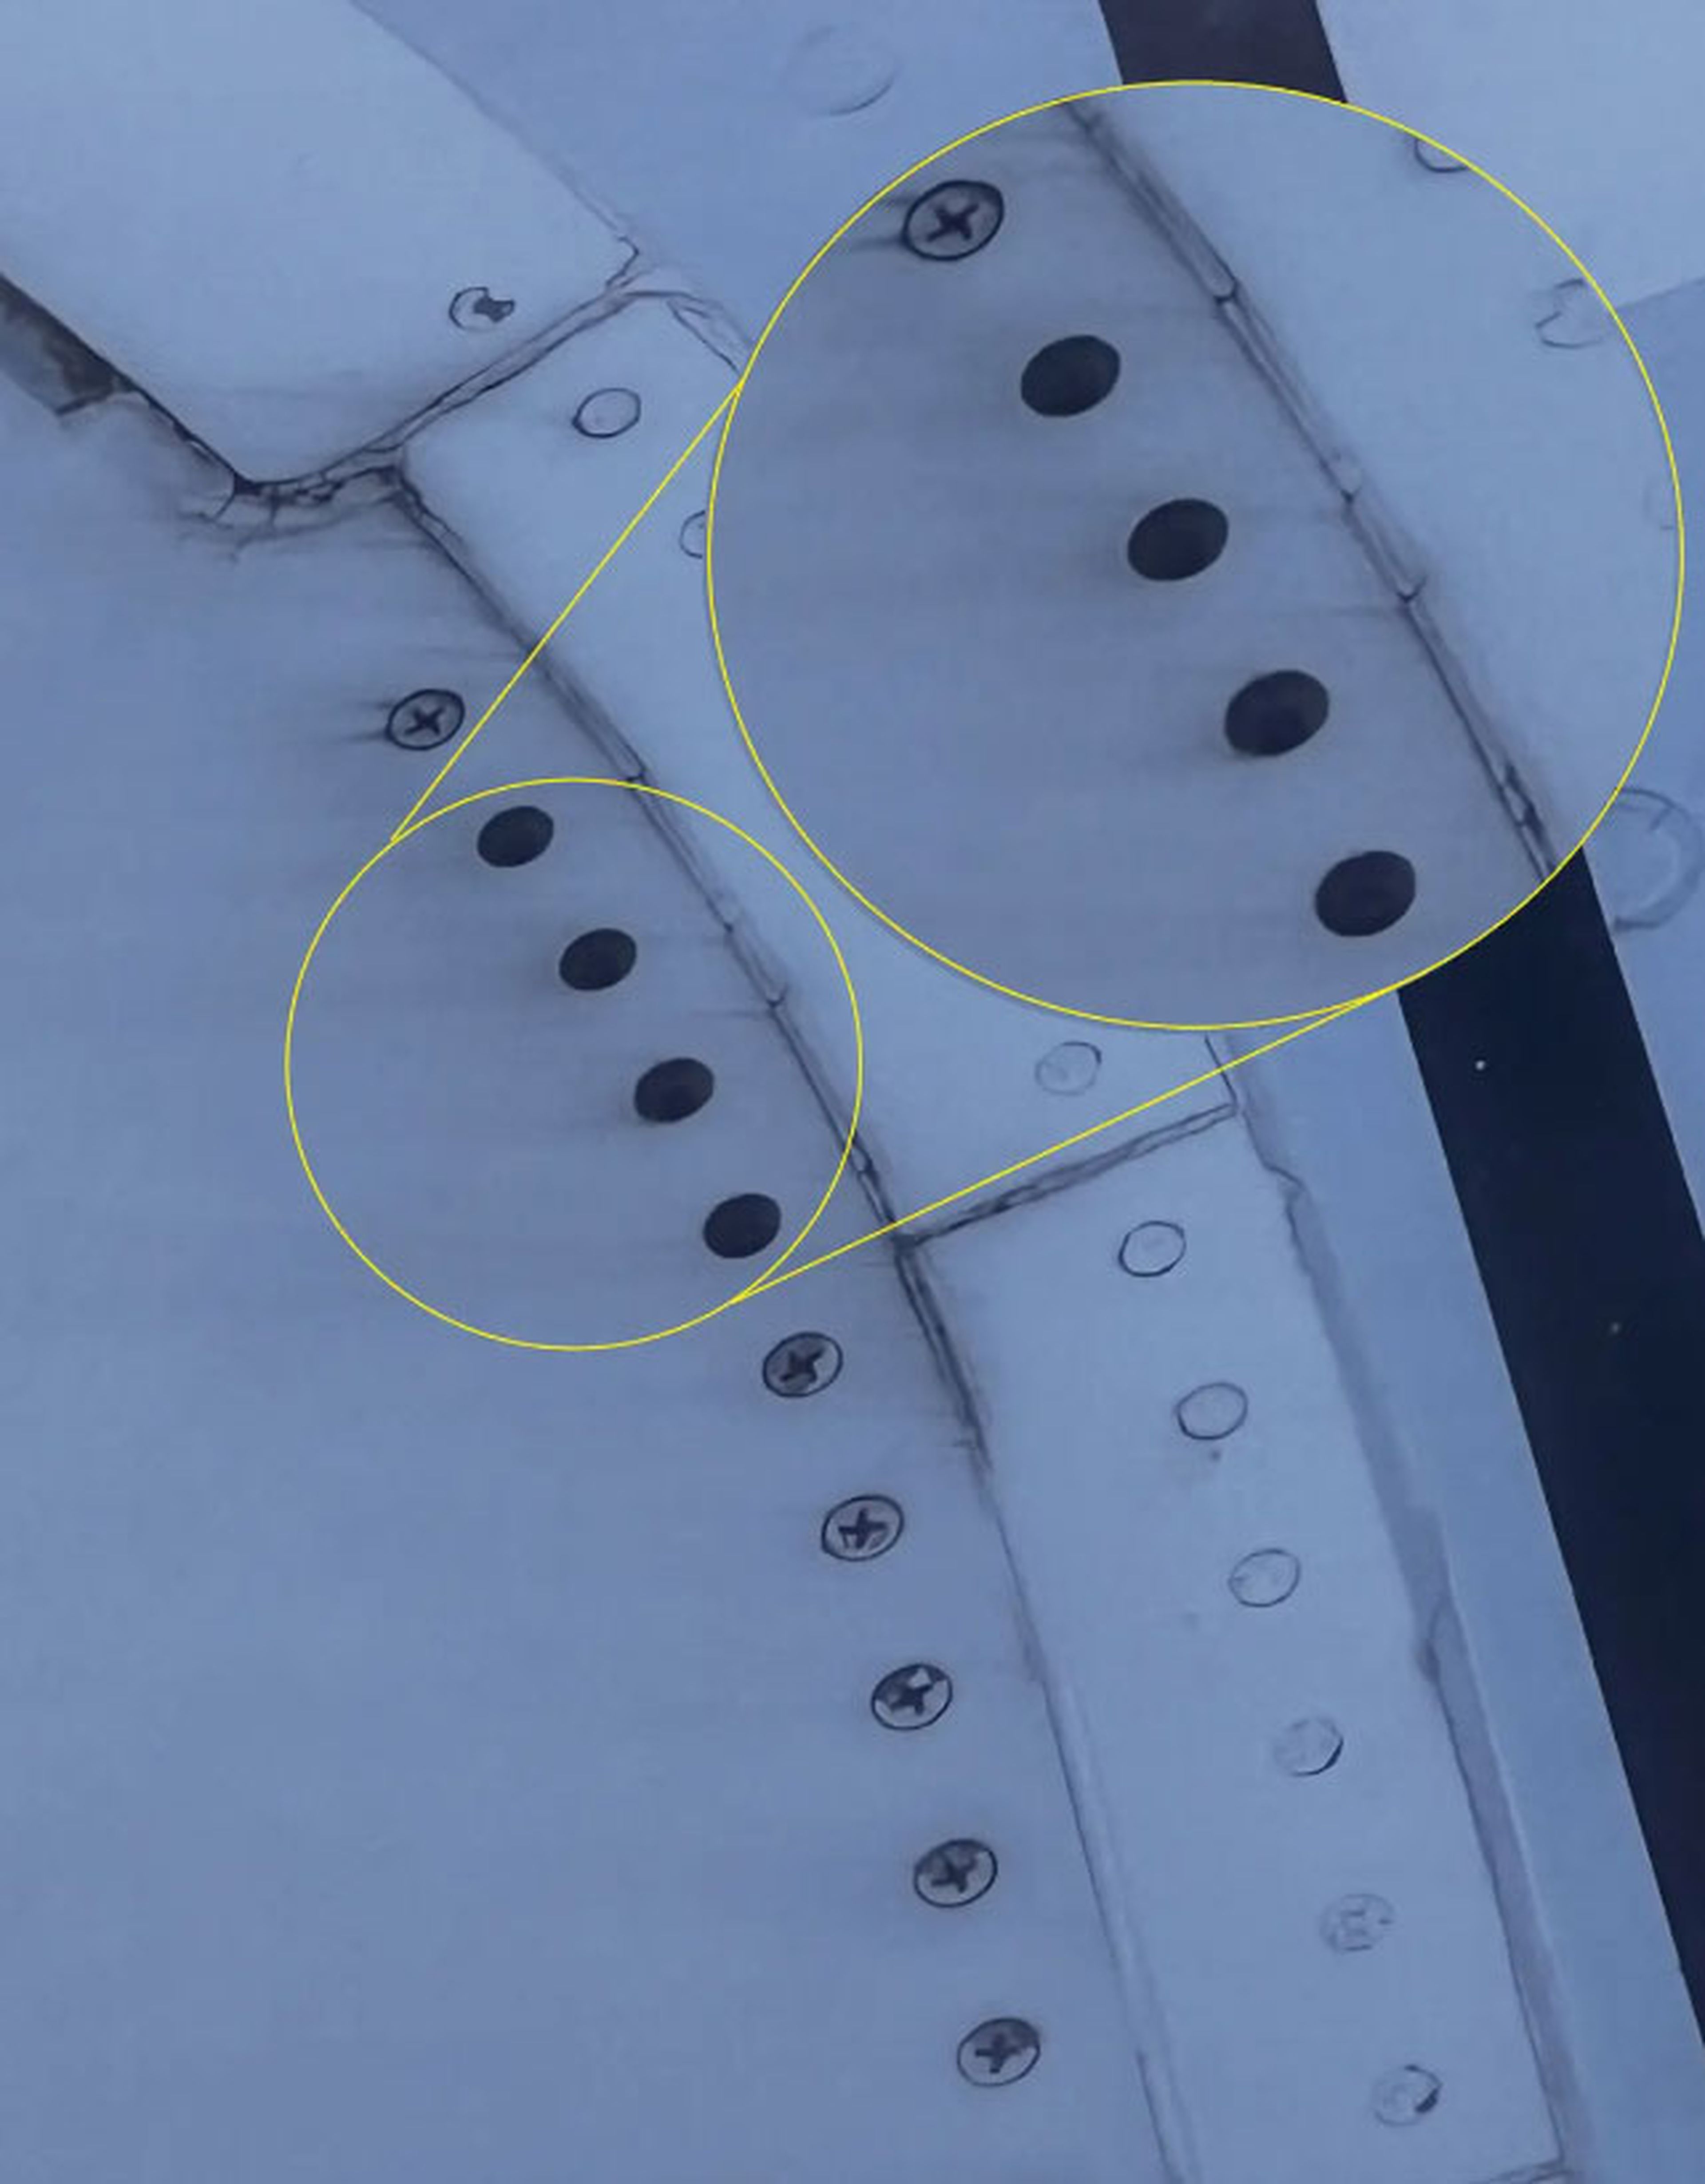 Un pasajero evita el despegue de su avión en el último segundo al detectar que faltaban tornillos en un ala